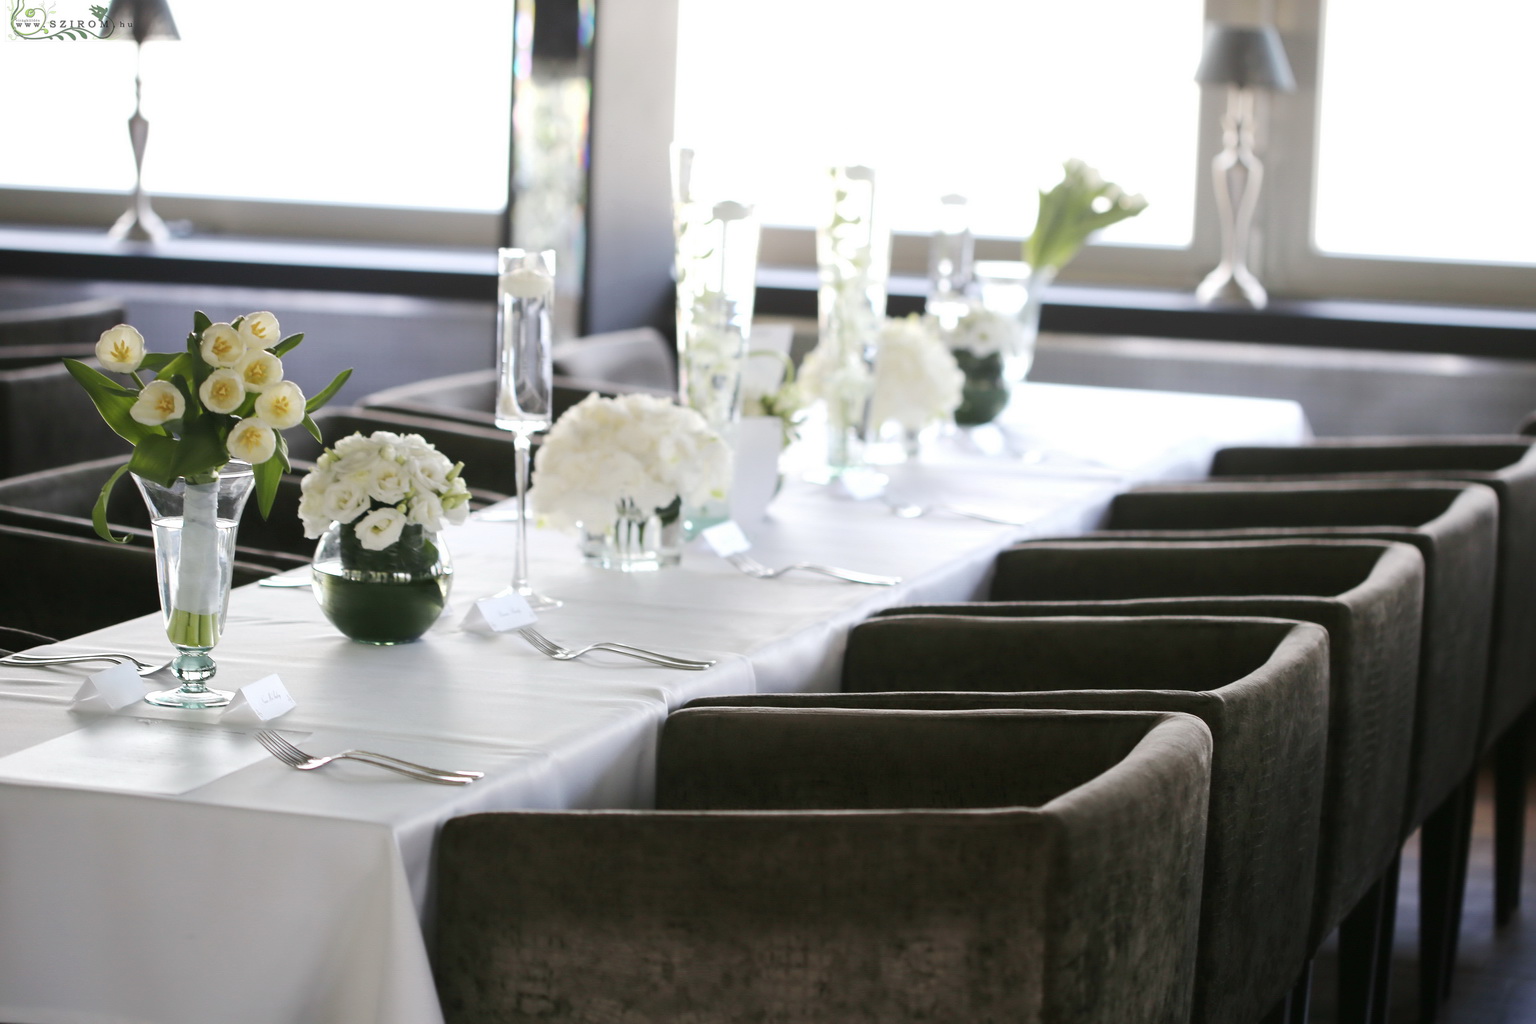 Esküvői asztal díszítés sok vázával, Spoon Budapest (dendrobium, hortenzia, tulipán, liziantusz, fehér)